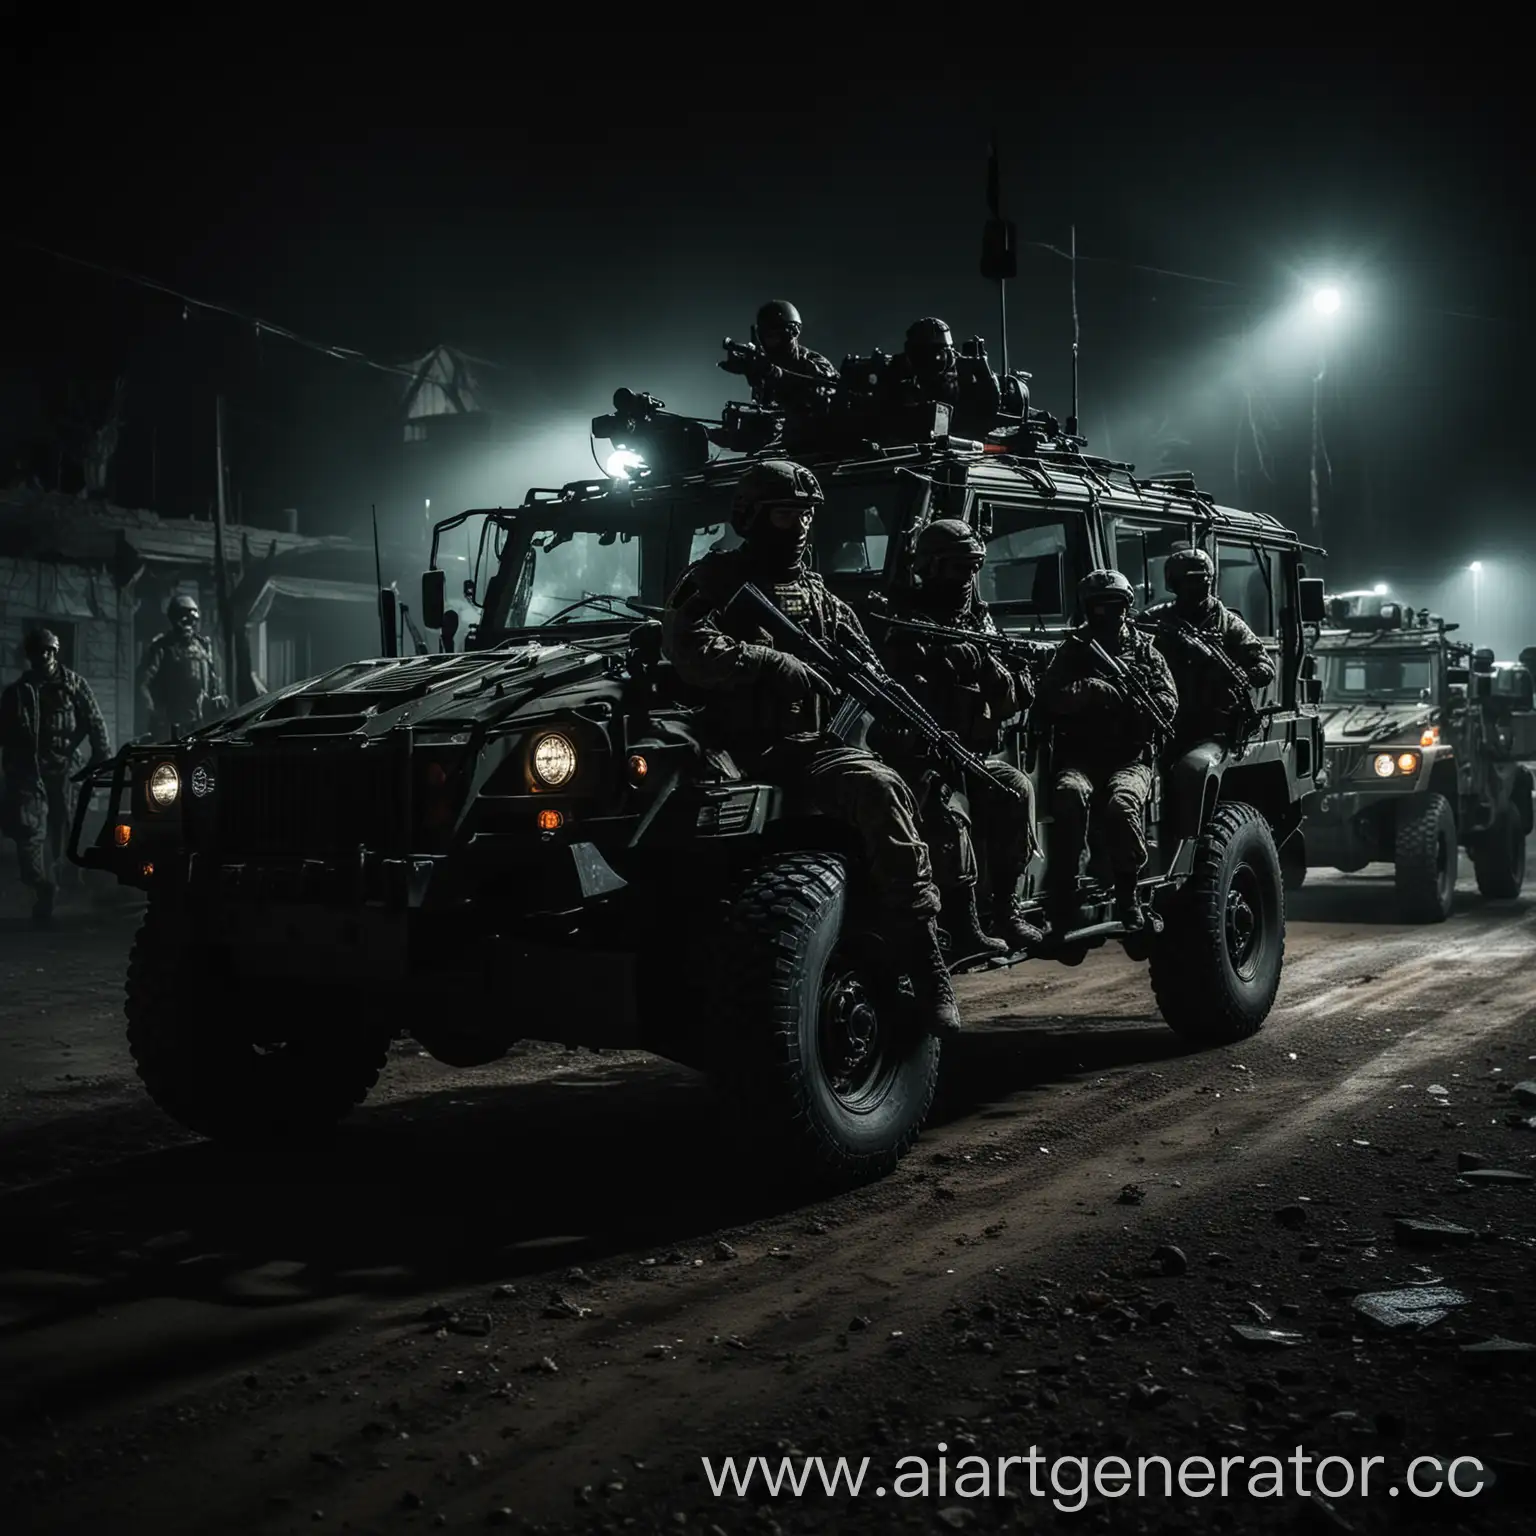 Военные США на специальной операции, военный автомобиль рядом с мигалками, у всех бойцов Автоматы Калашникова, изображение темное страшное.